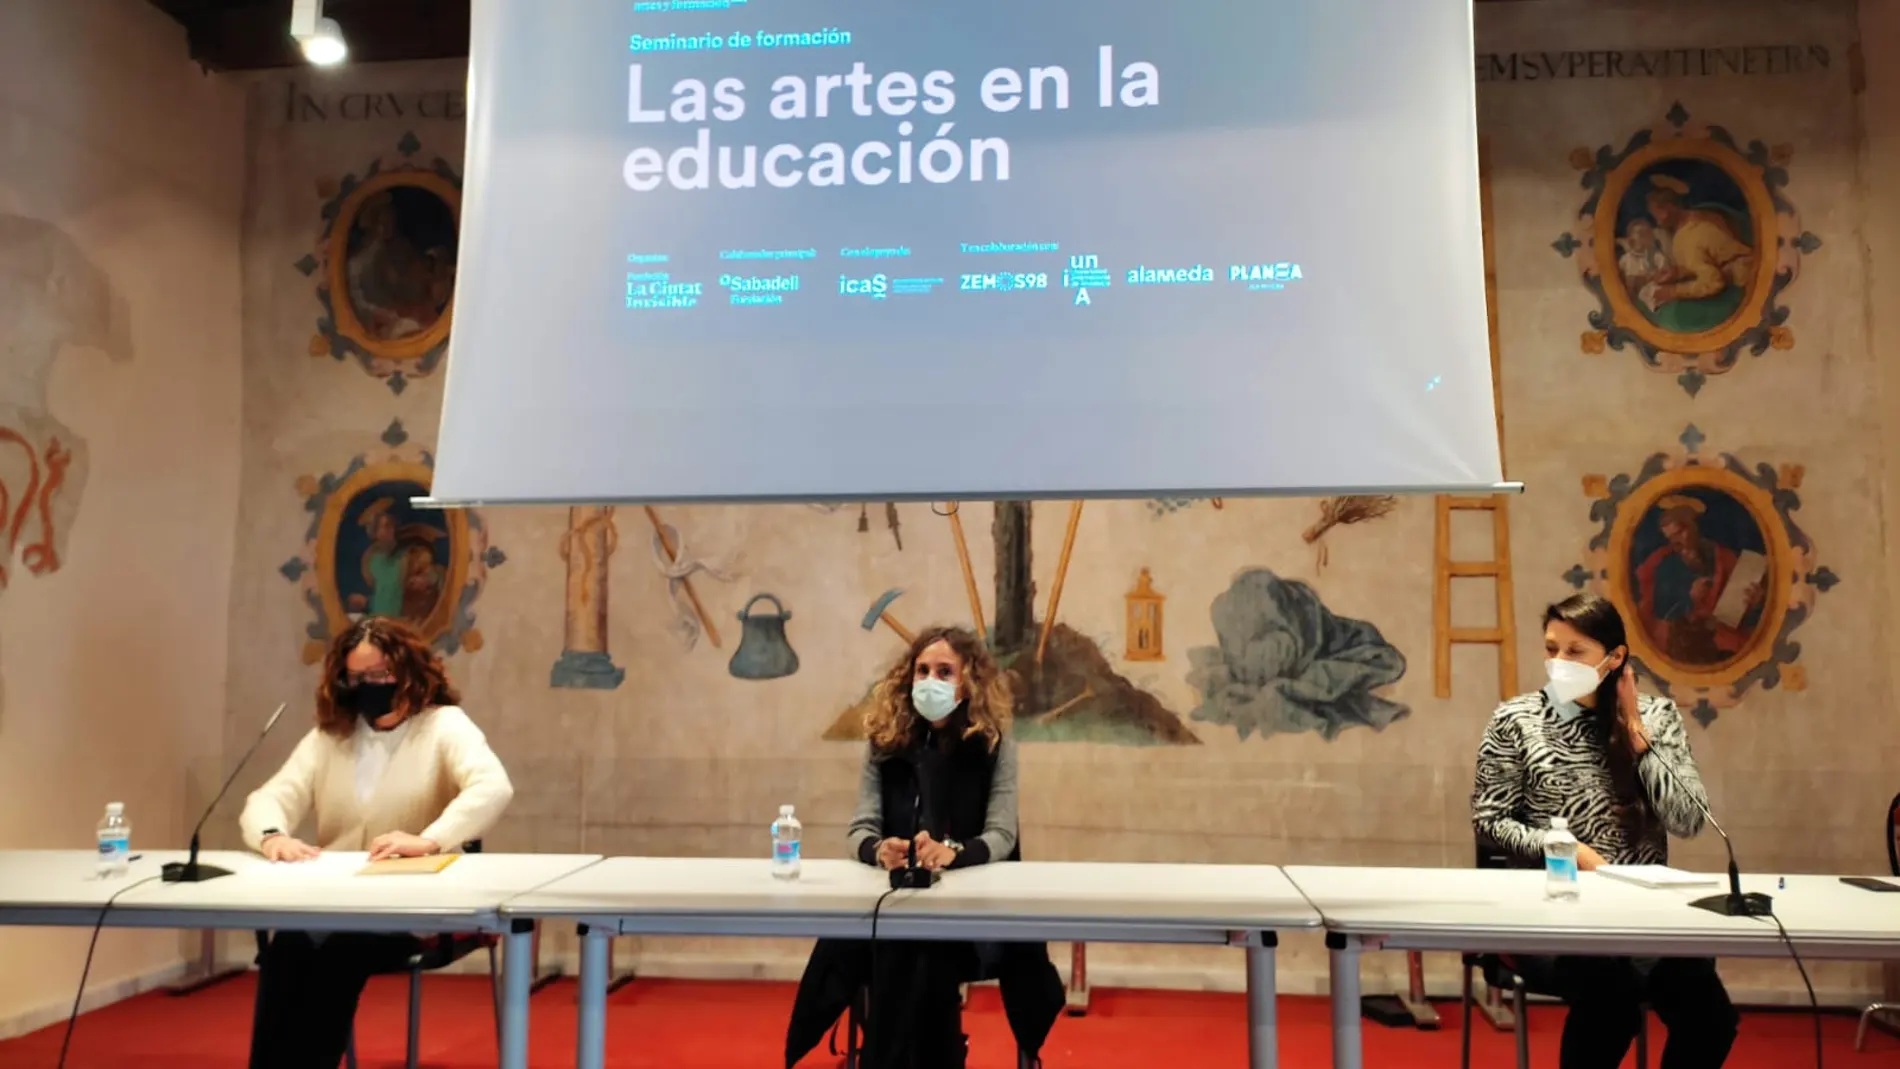 De izquierda a derecha, Marta Montalbán, gerente de la Fundación Ciutat Invisible, en el centro Isabel Ojeda, directora general de Cultura del Ayuntamiento de Sevilla, y Marcela Otarola, coordinadora del seminario Las Artes en la Educación